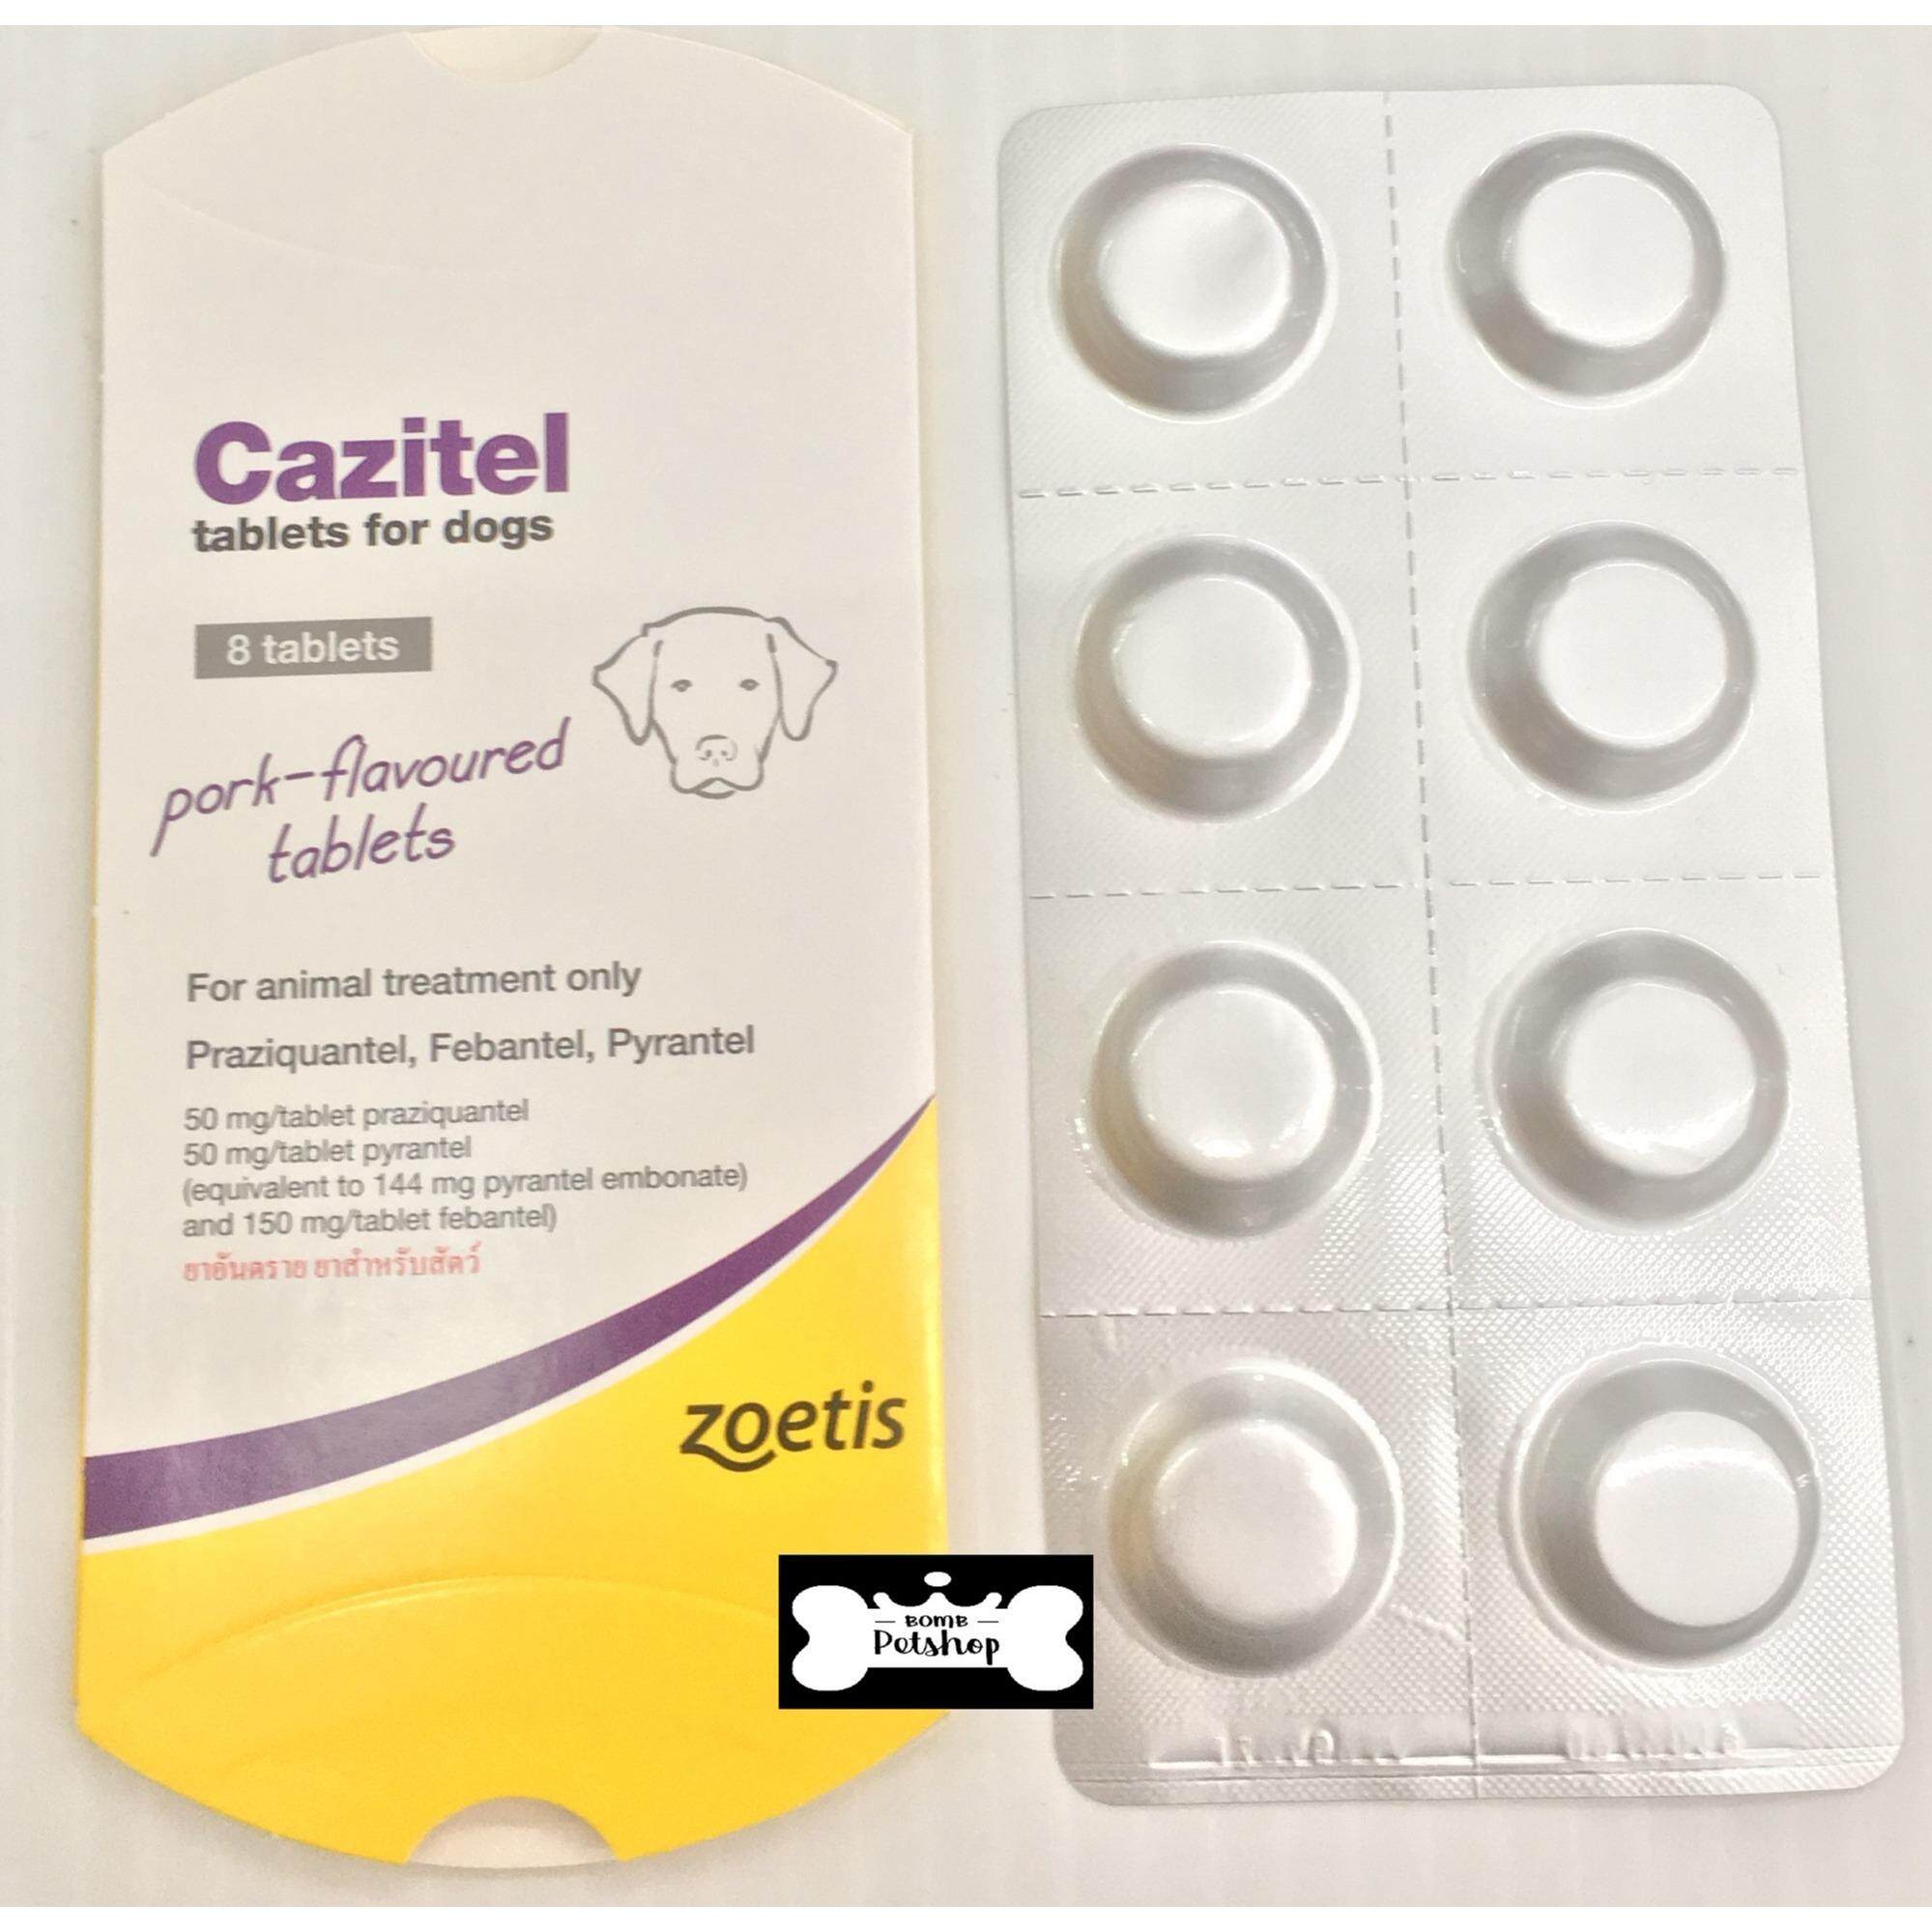 Cazitel tablets for dogs คาซิเทล ยาเม็ดสำหรับ สุนัข รักษาการติดเชื้อ พยาธิตัวกลม และพยาธิตัวตืด 1 แผง บรรจุ 8 เม็ด